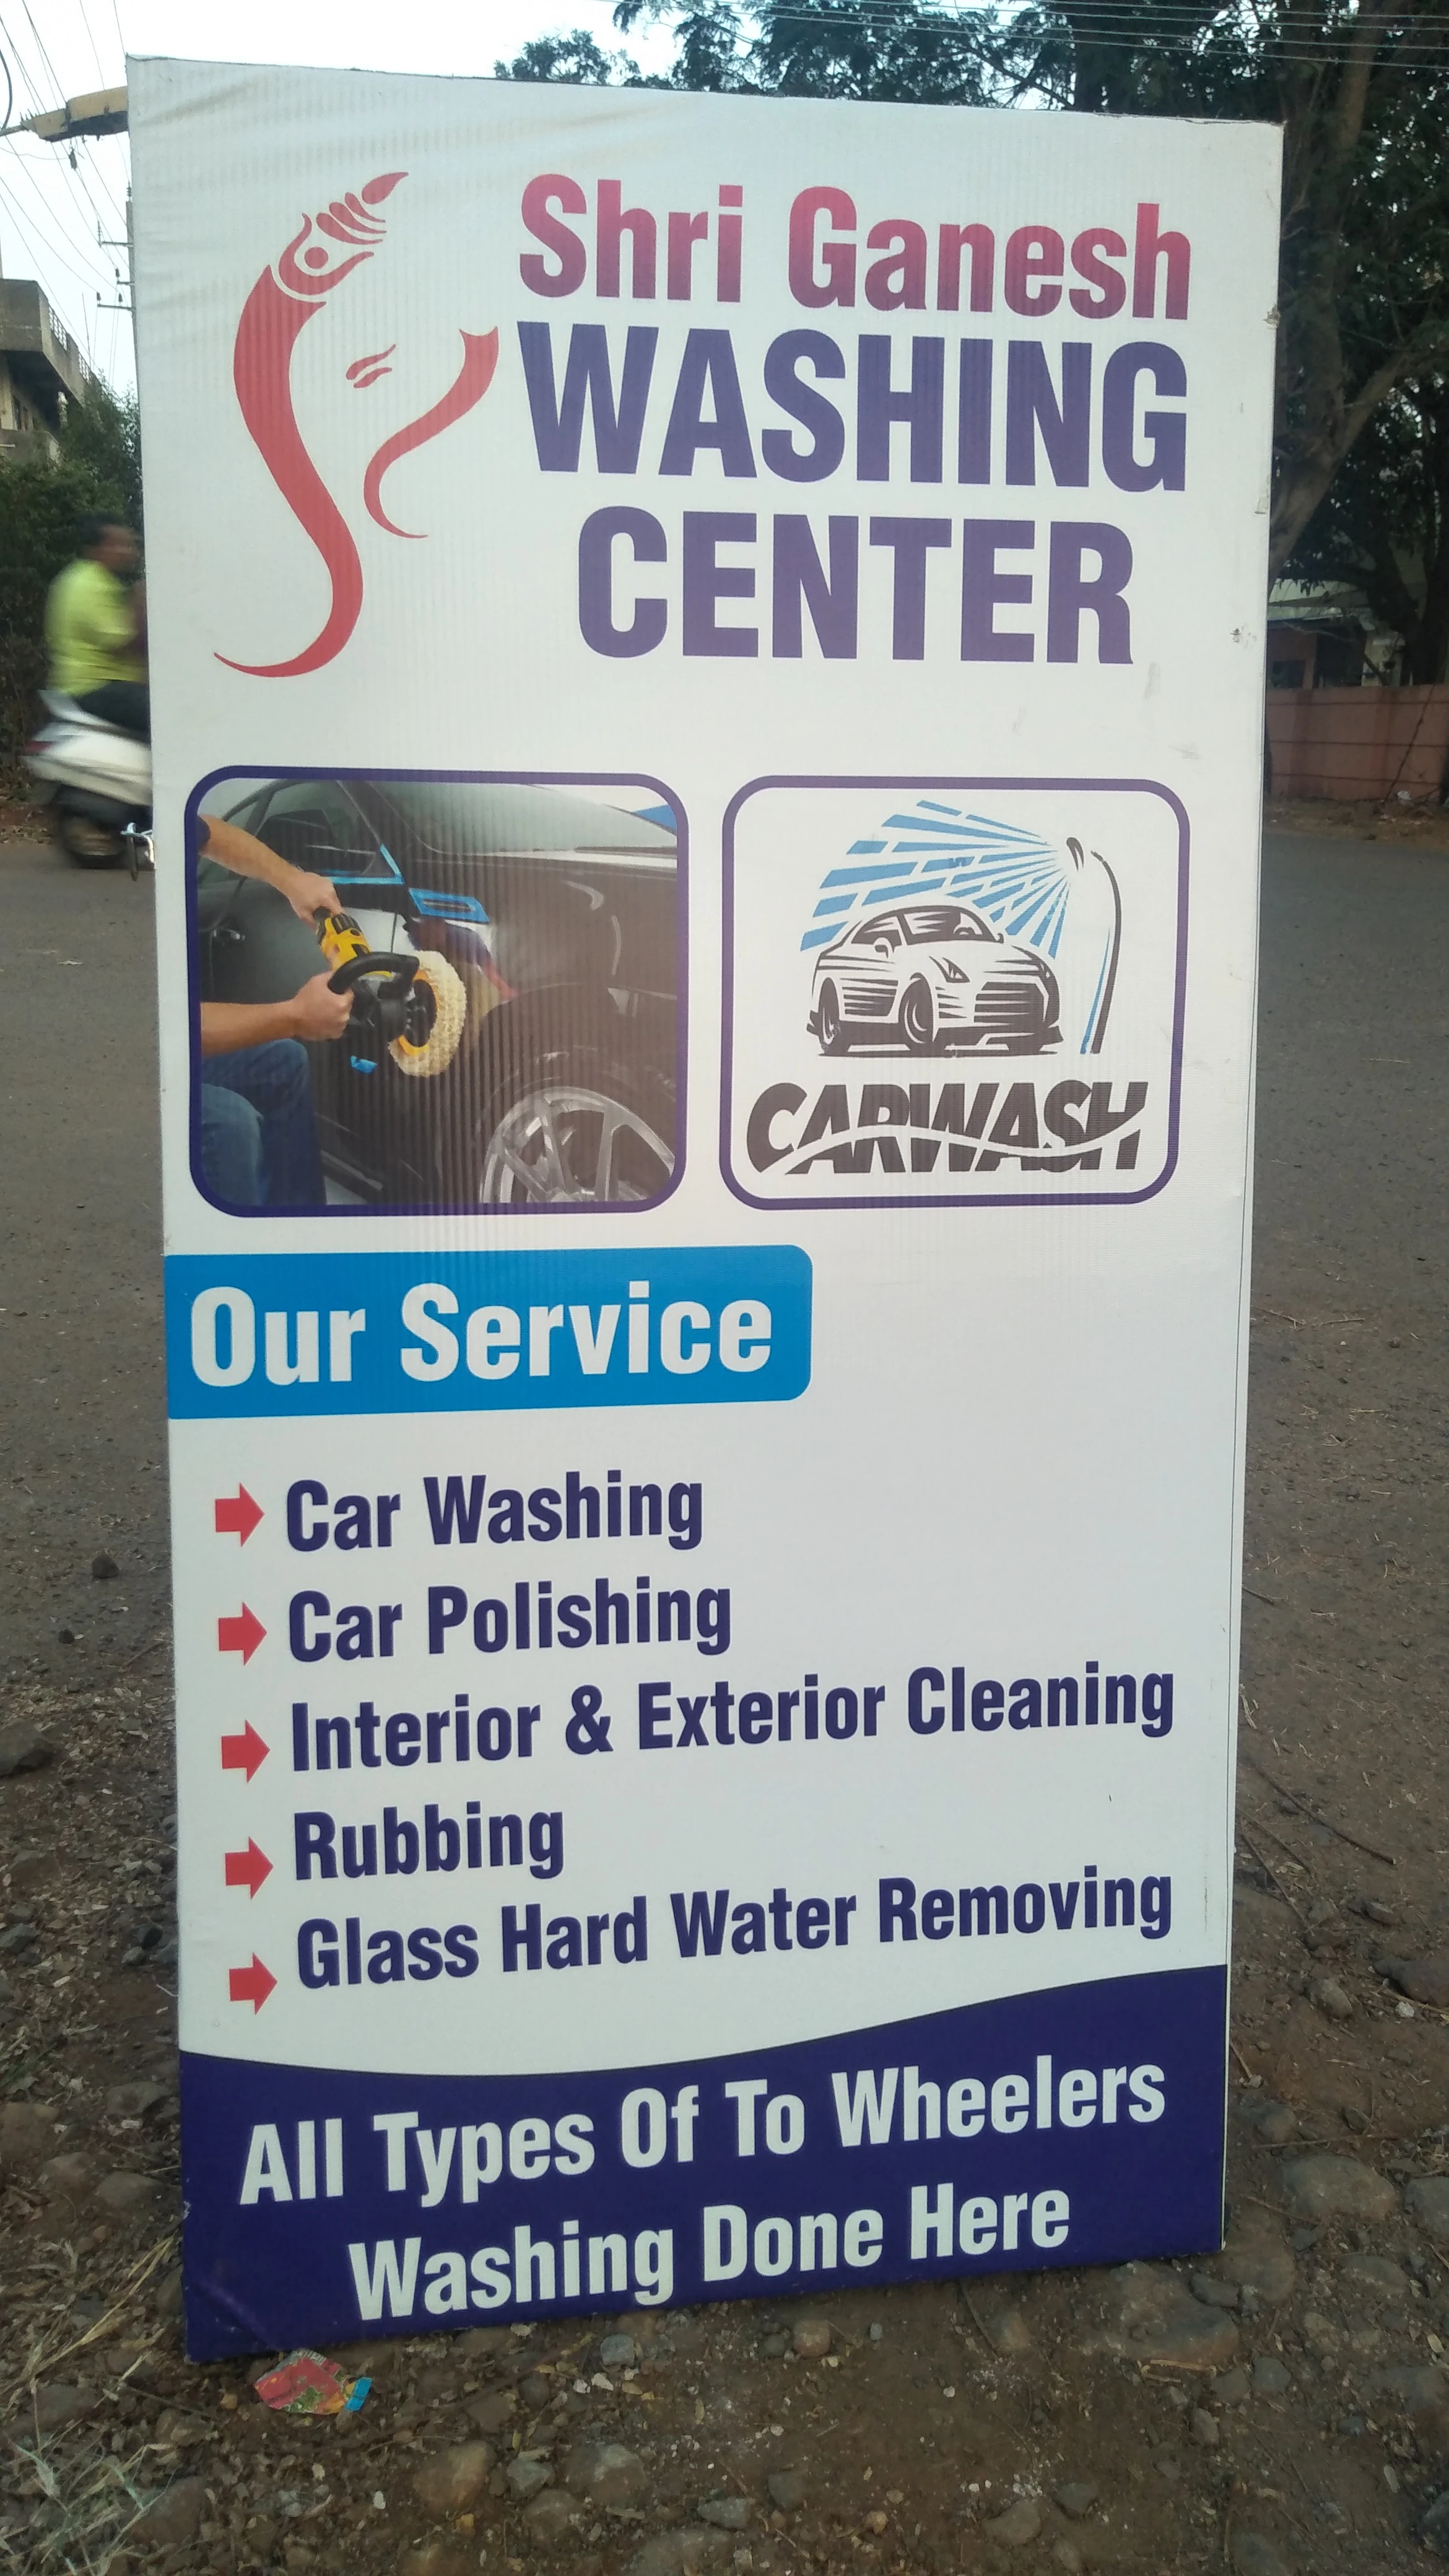 Shri ganesh washing center